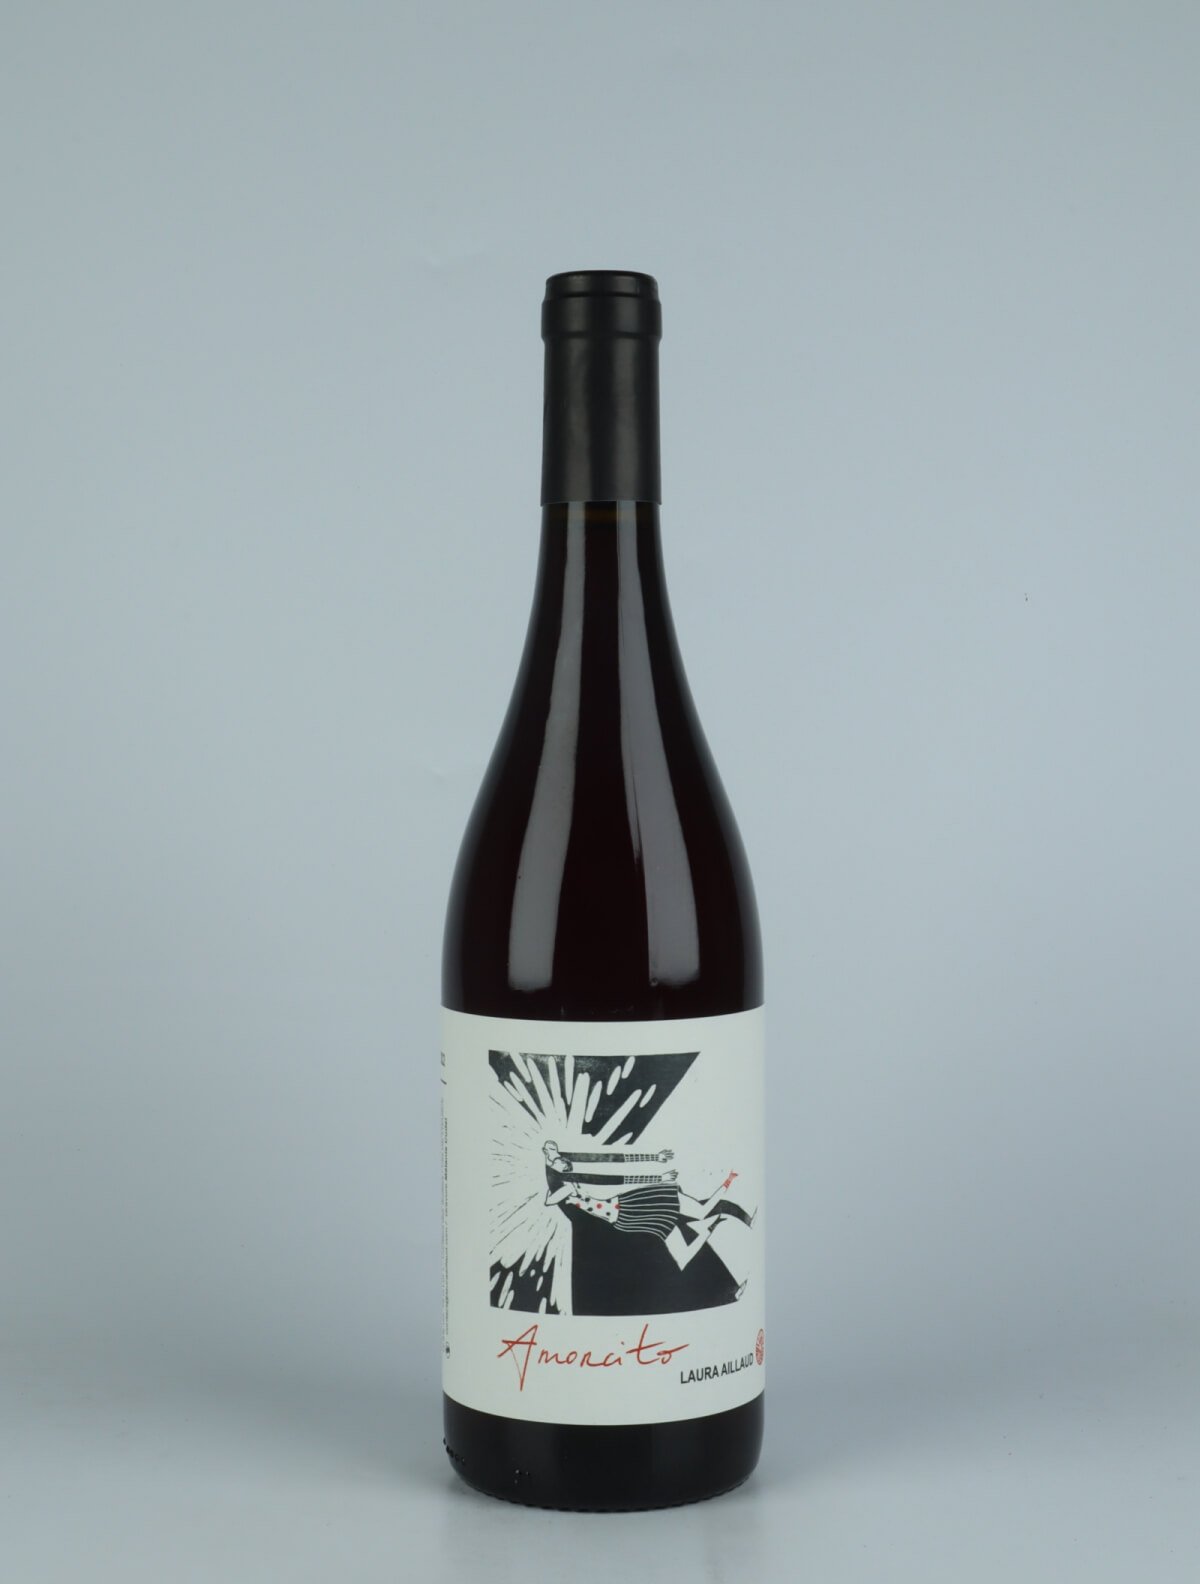 En flaske 2022 Amorcito Rødvin fra Laura Aillaud, Rhône i Frankrig